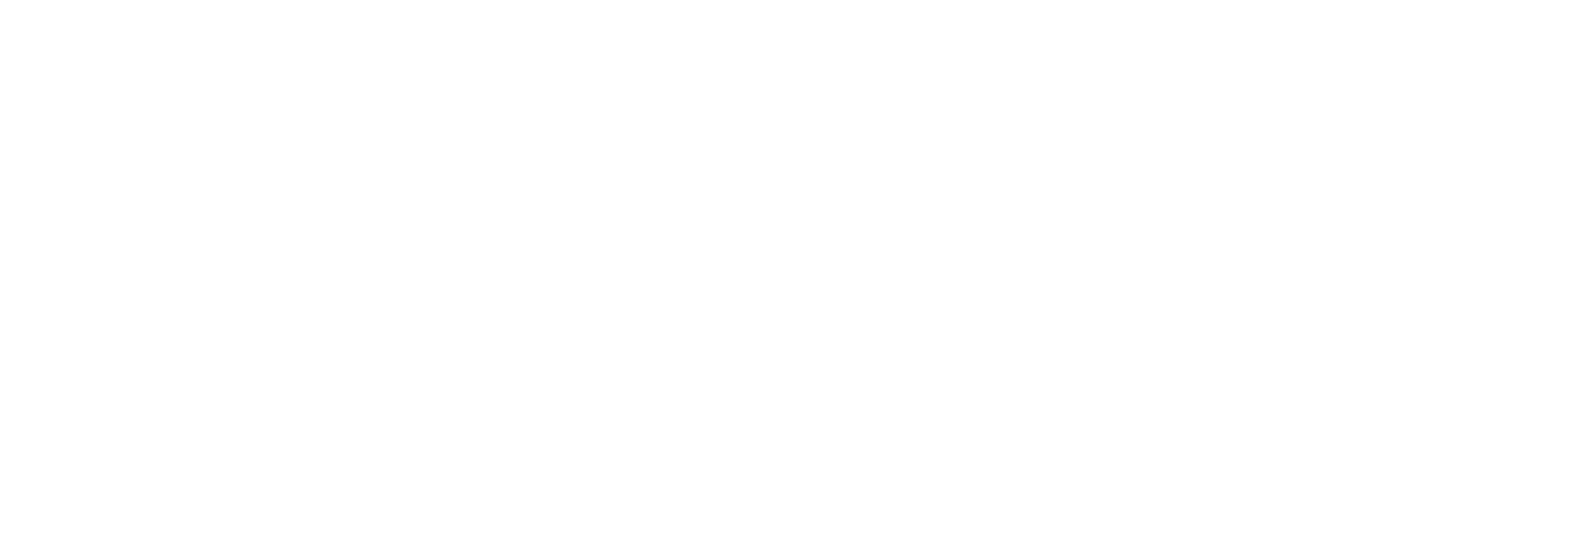 Aeterna Zentaris logo large for dark backgrounds (transparent PNG)